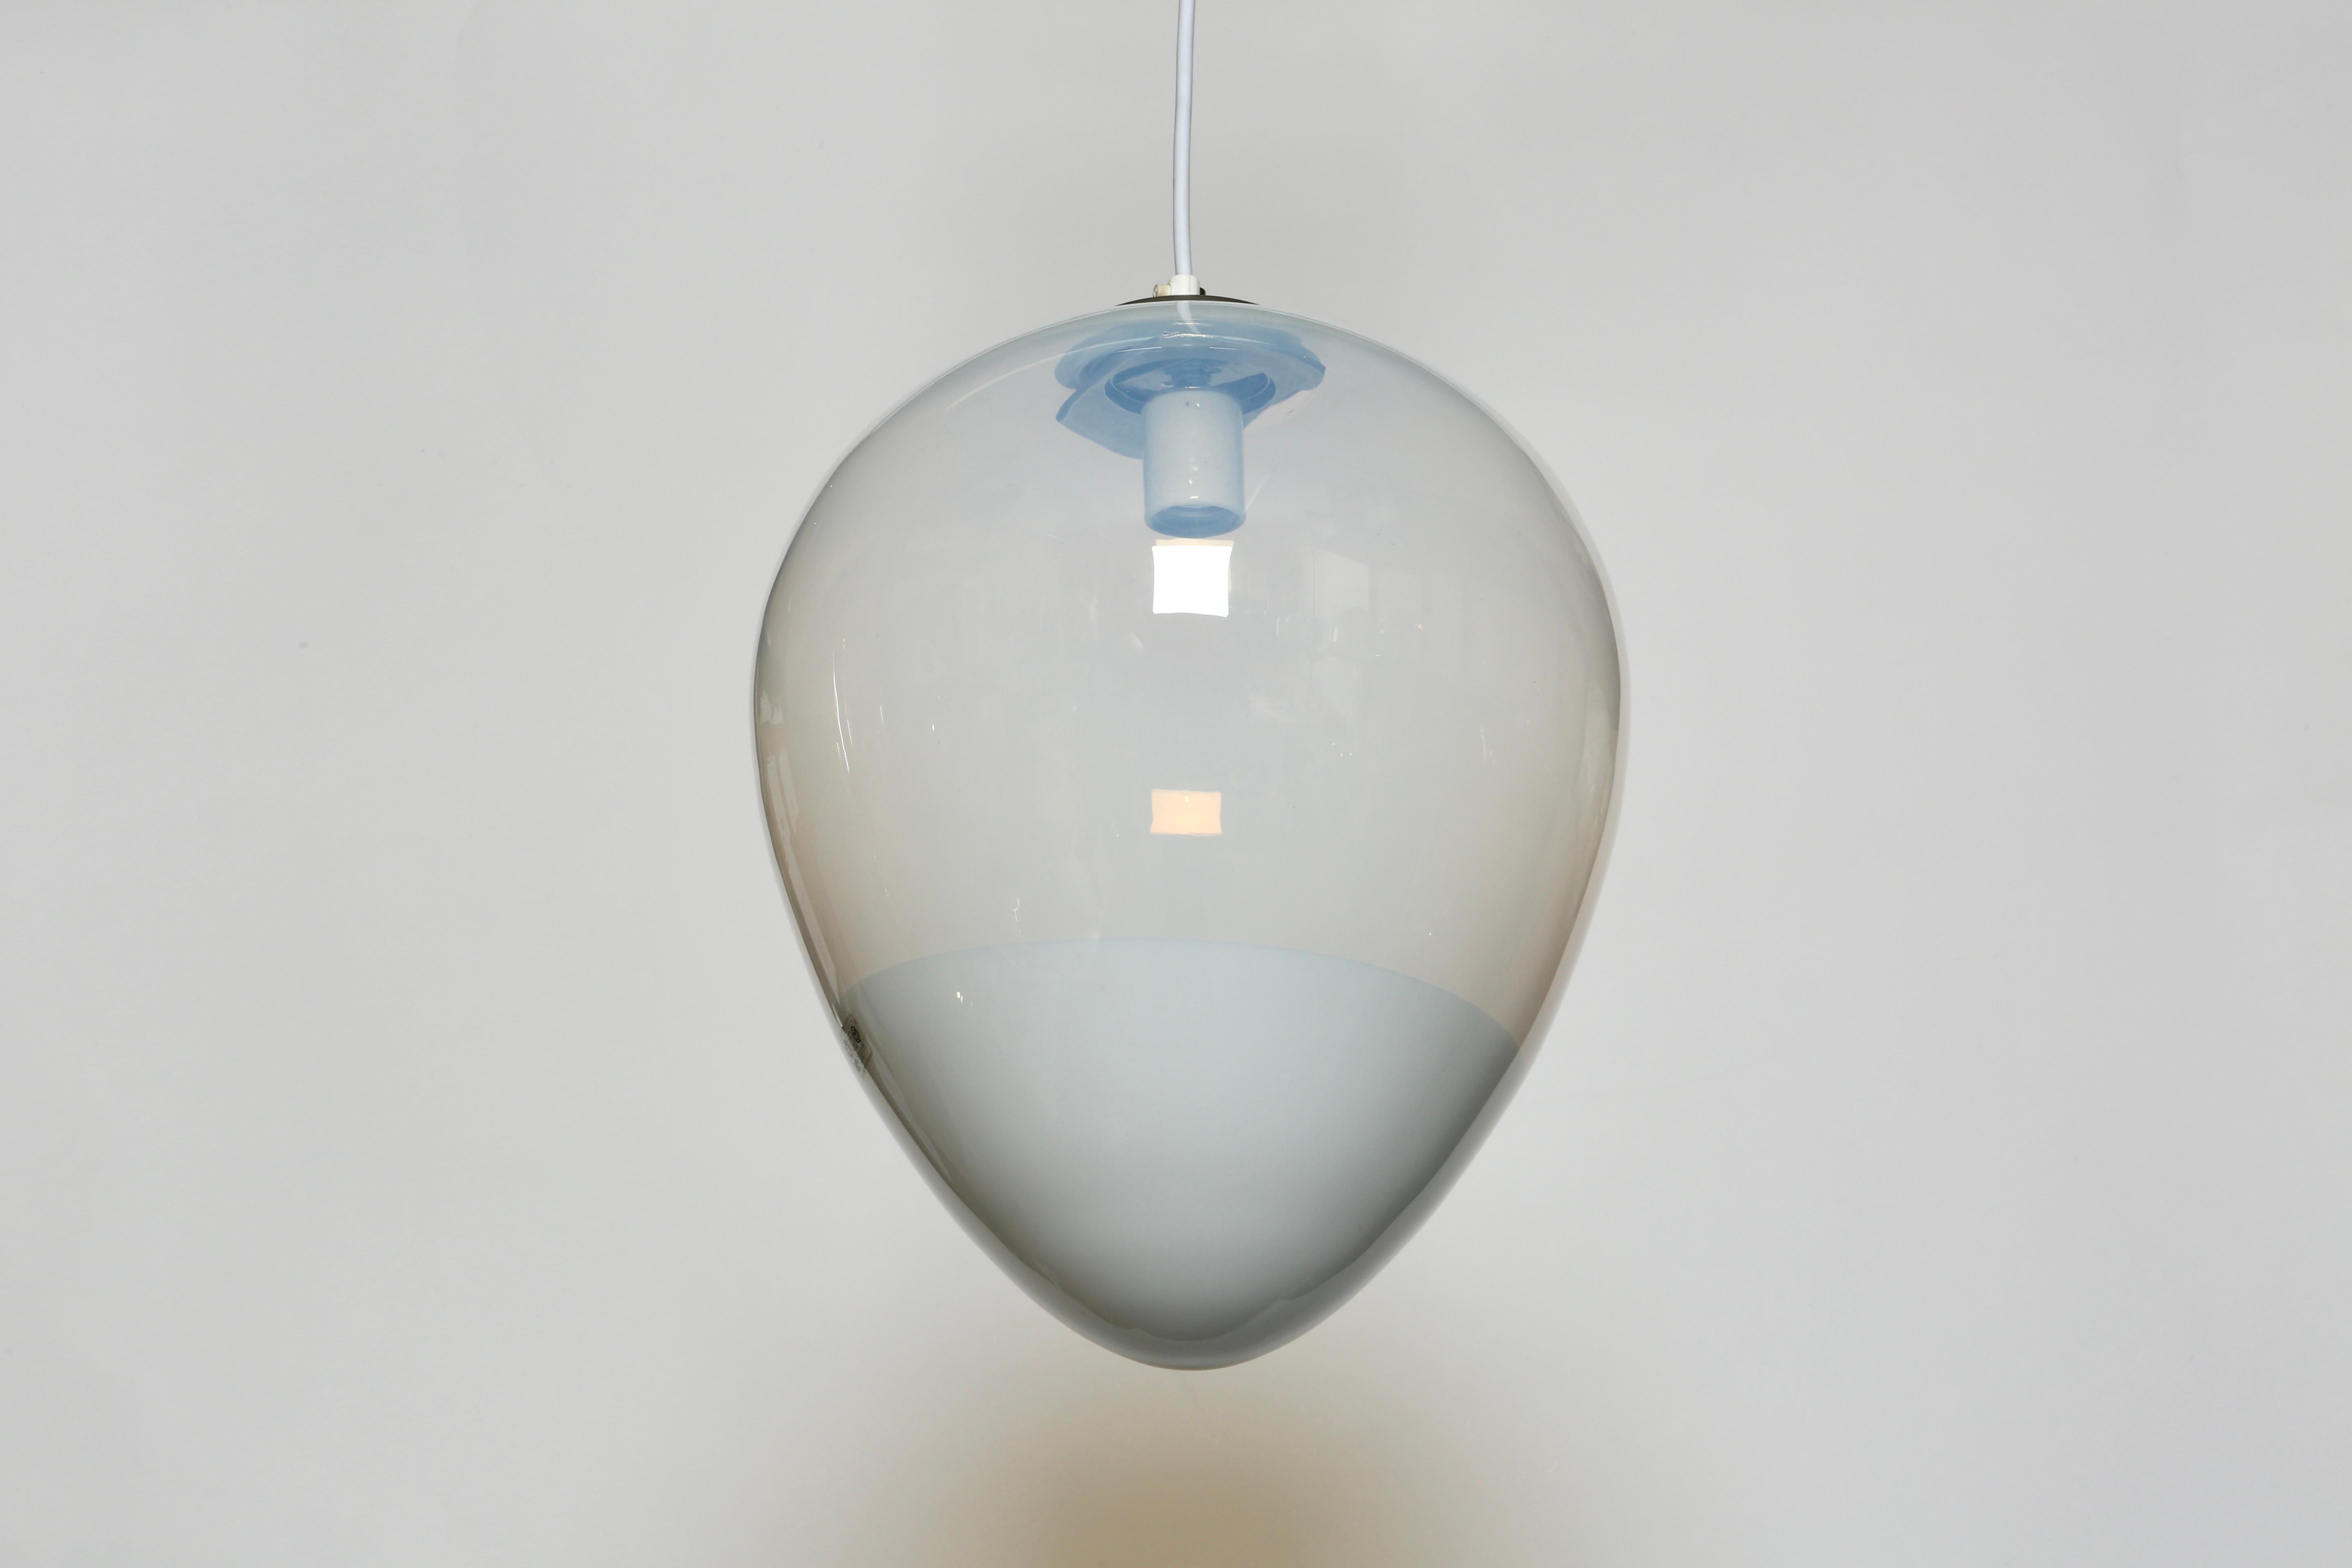 Suspension de plafond en verre de Murano par Leucos.
Fabriqué en Italie dans les années 1970.
Verre soufflé à la main.
Rewired for US.
Fonctionne avec une ampoule à culot moyen.
La hauteur totale est réglable, elle peut être plus courte.
1